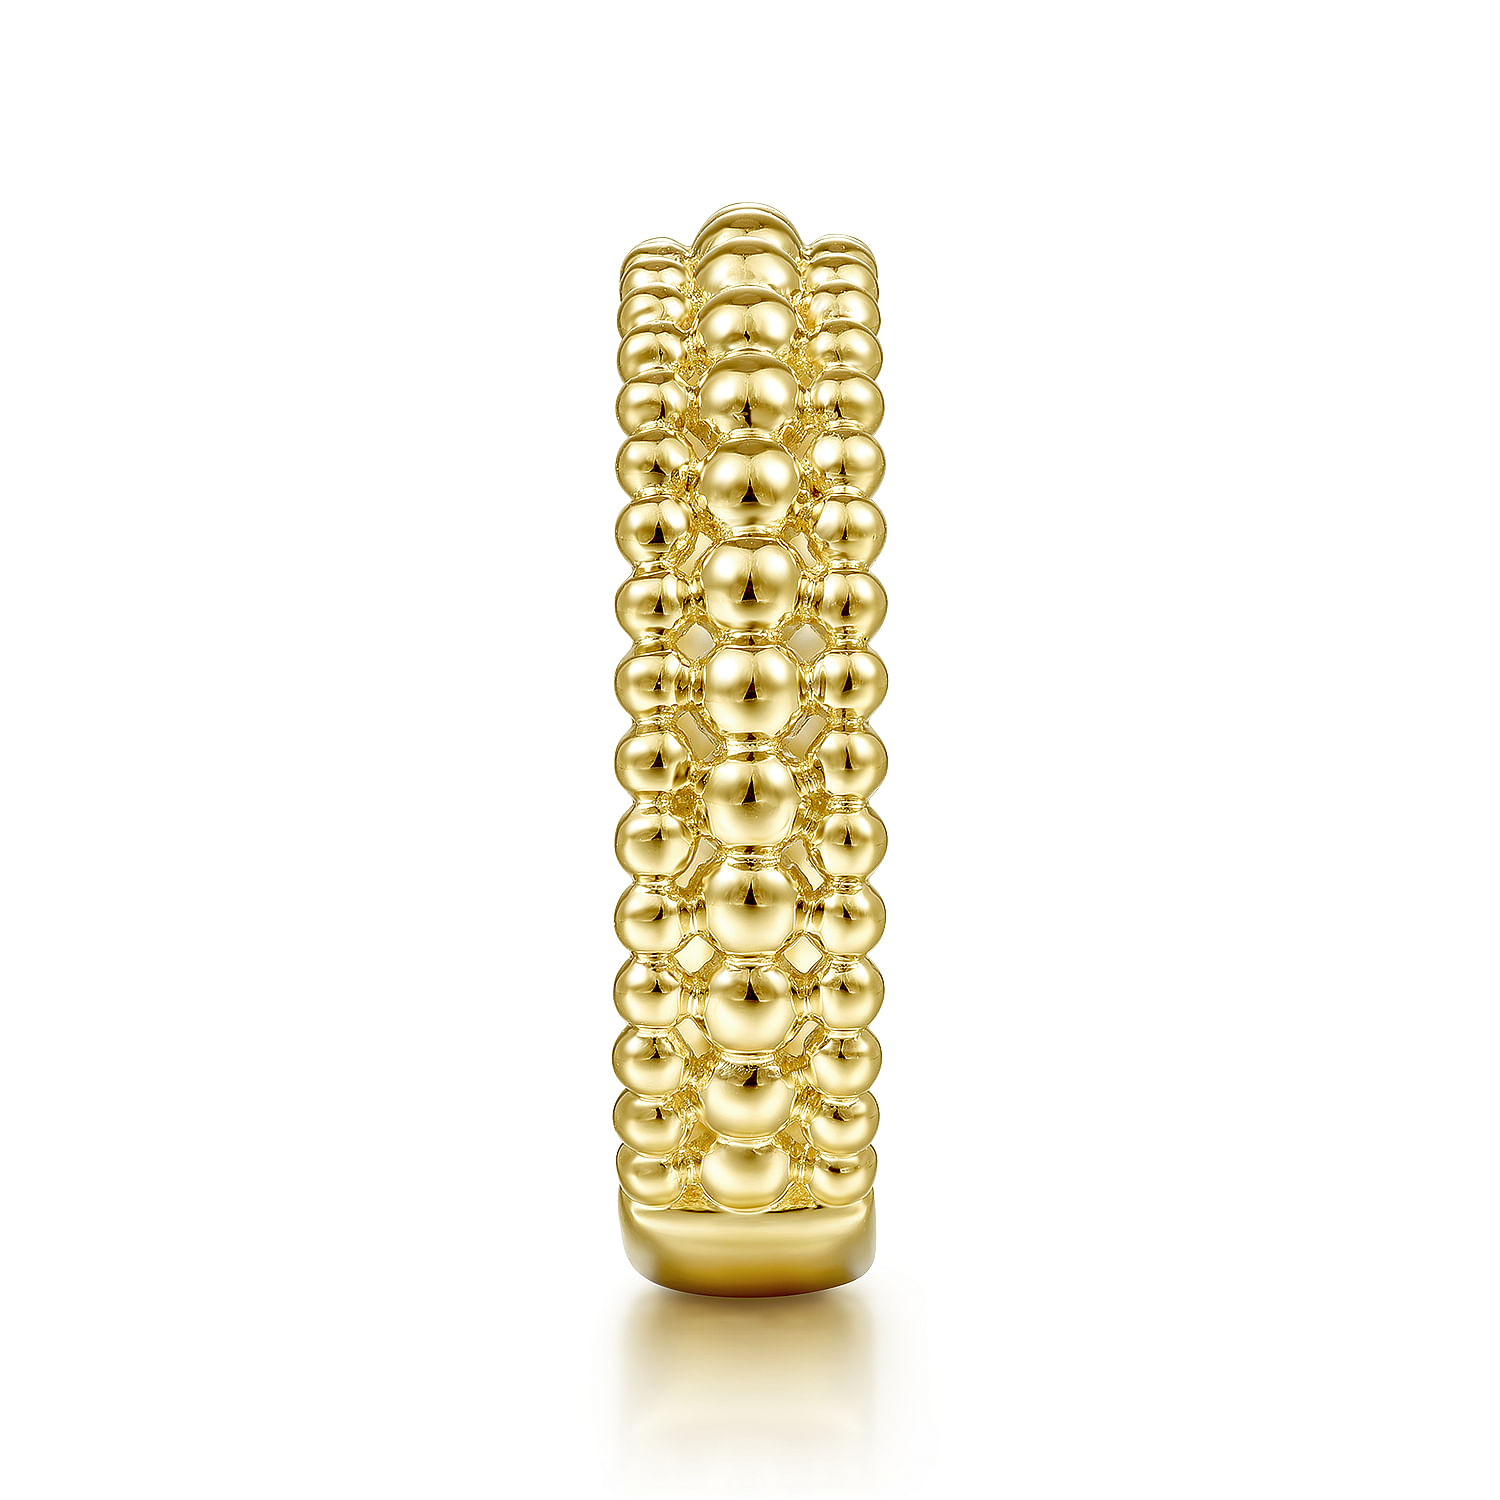 14K Yellow Gold Three Row Bujukan Bead Ring